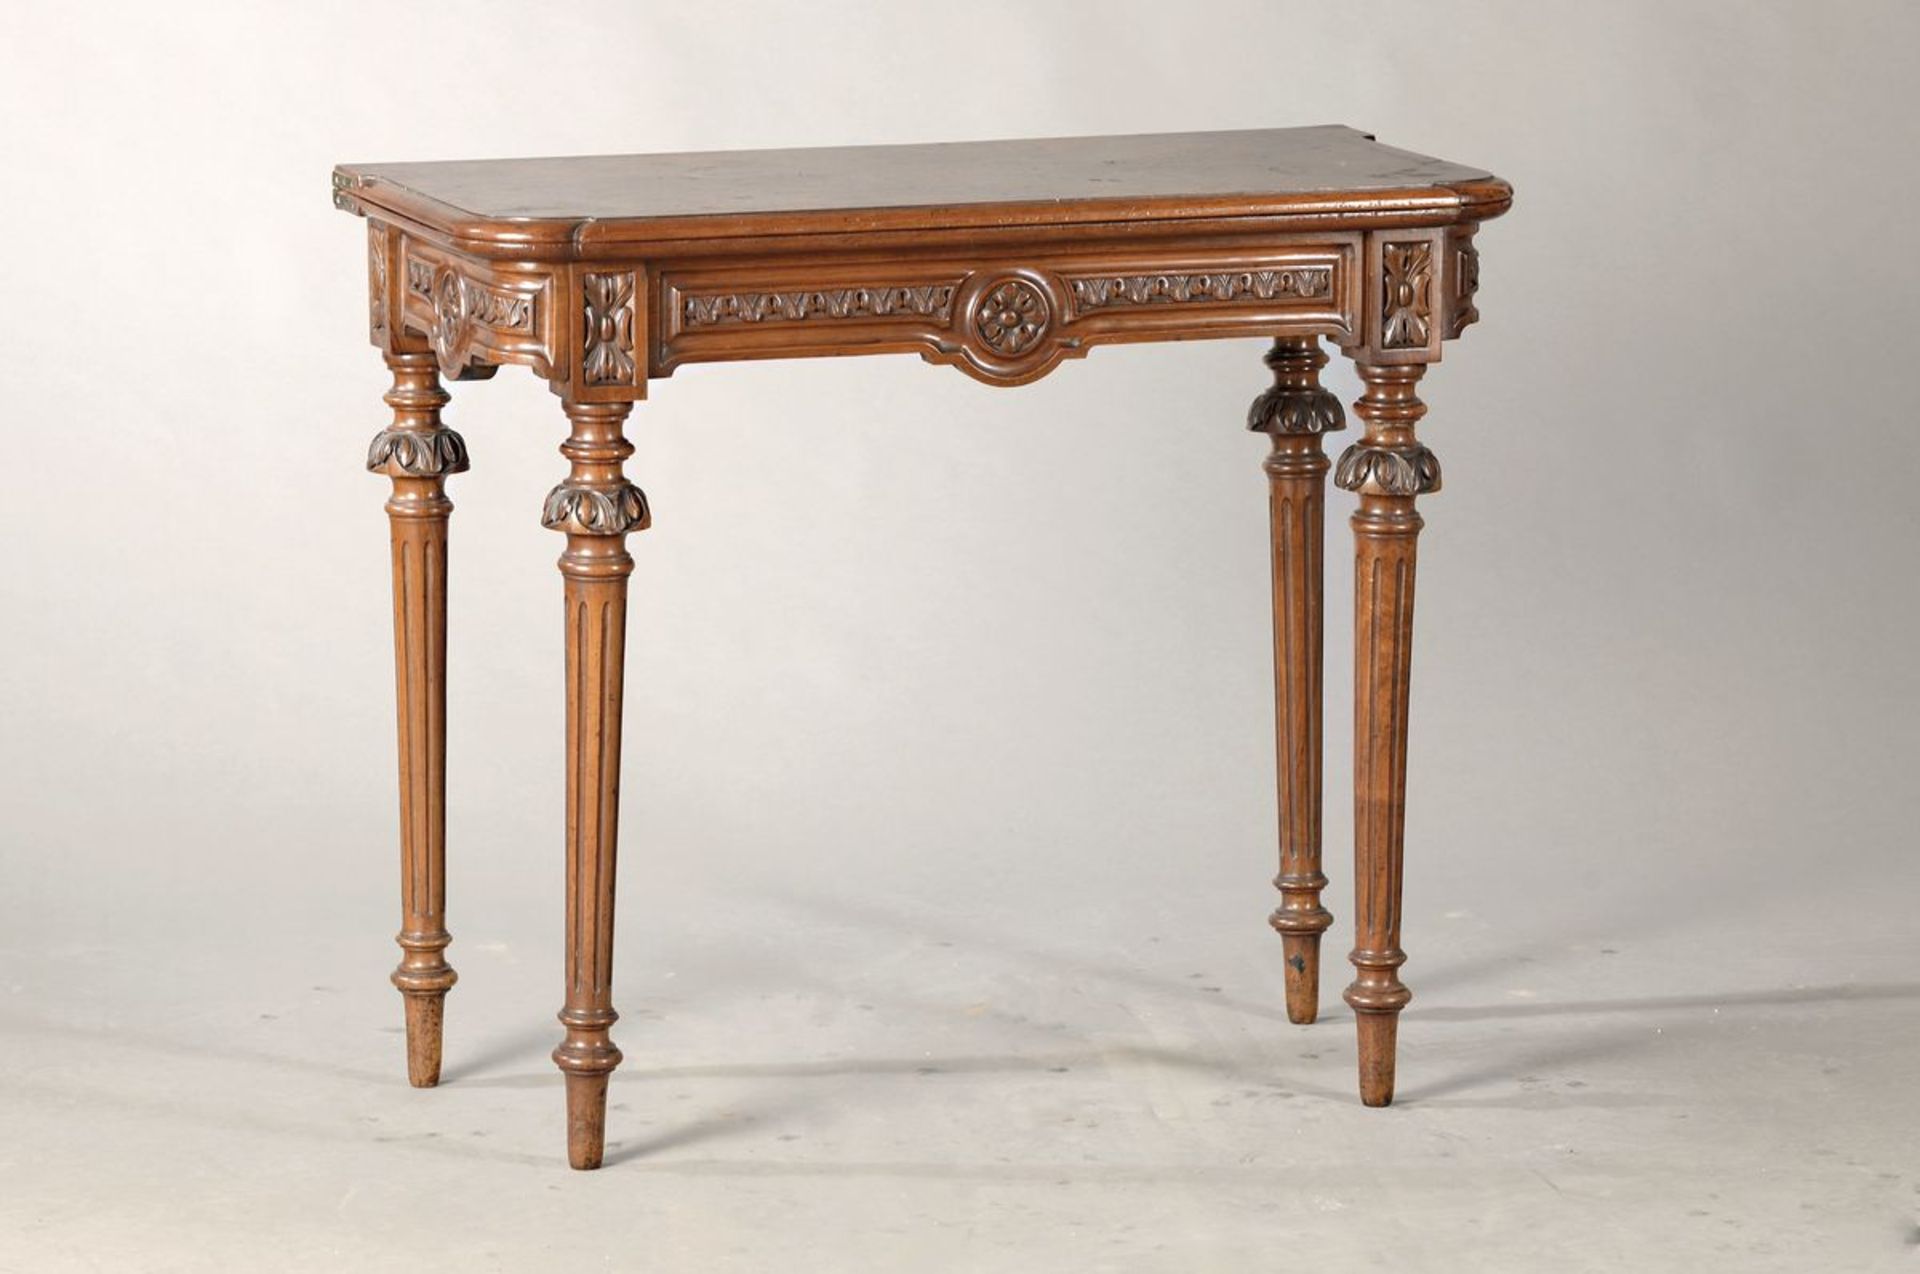 Spieltisch, süddeutsch, um 1850/60, Nussbaum massiv und